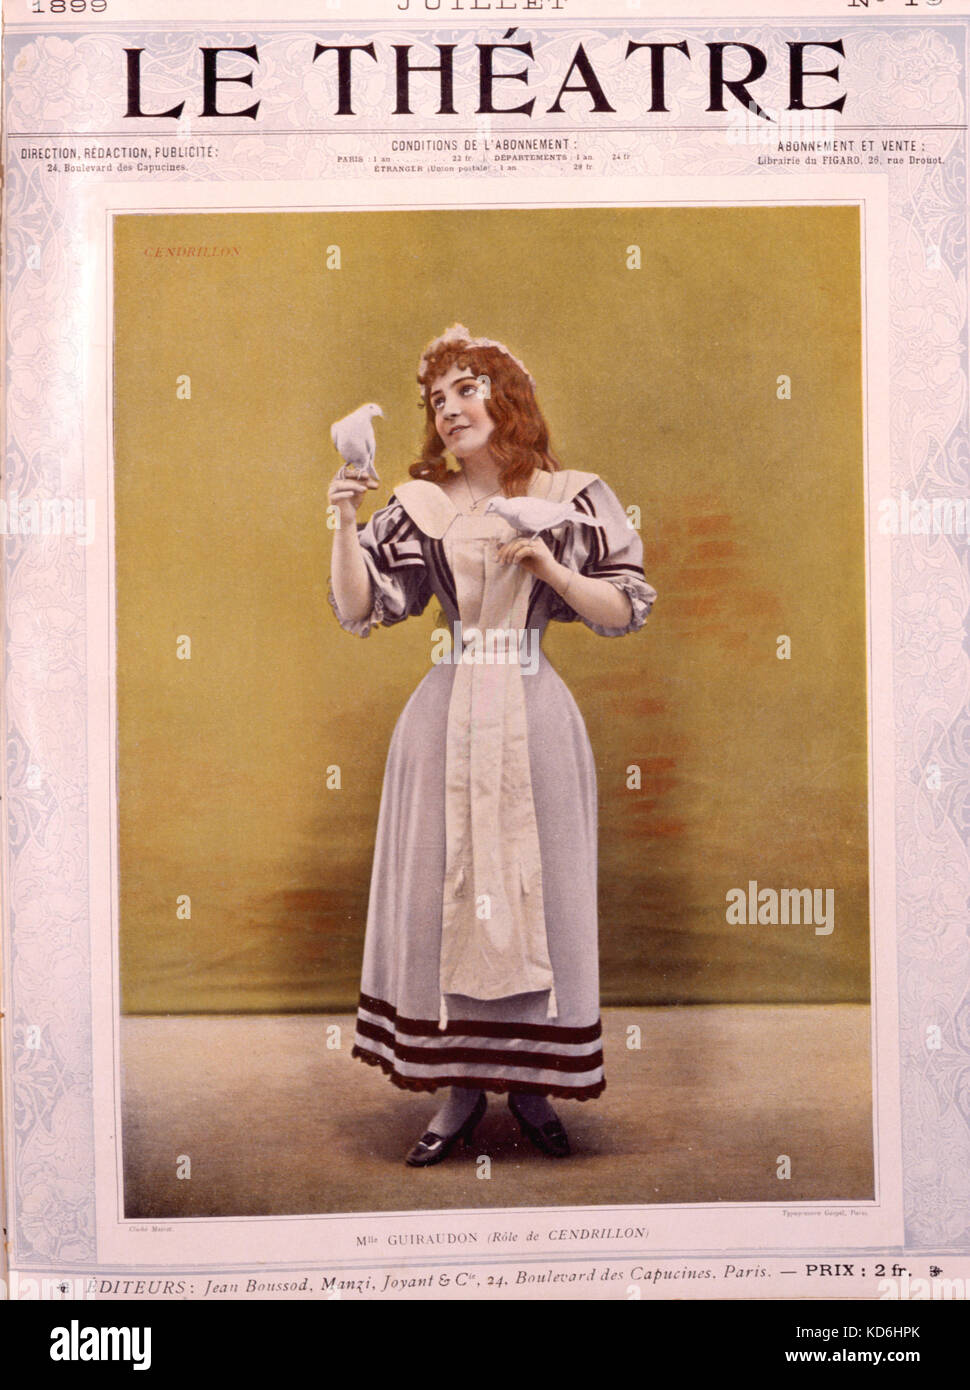 "Cendrillon" (Cendrillon) création de Massenet en 1899 au Théâtre National de l'Opera-Comique, Paris, avec Mlle Guiraudon, dans le rôle titre. Le Théâtre, 1899. Banque D'Images